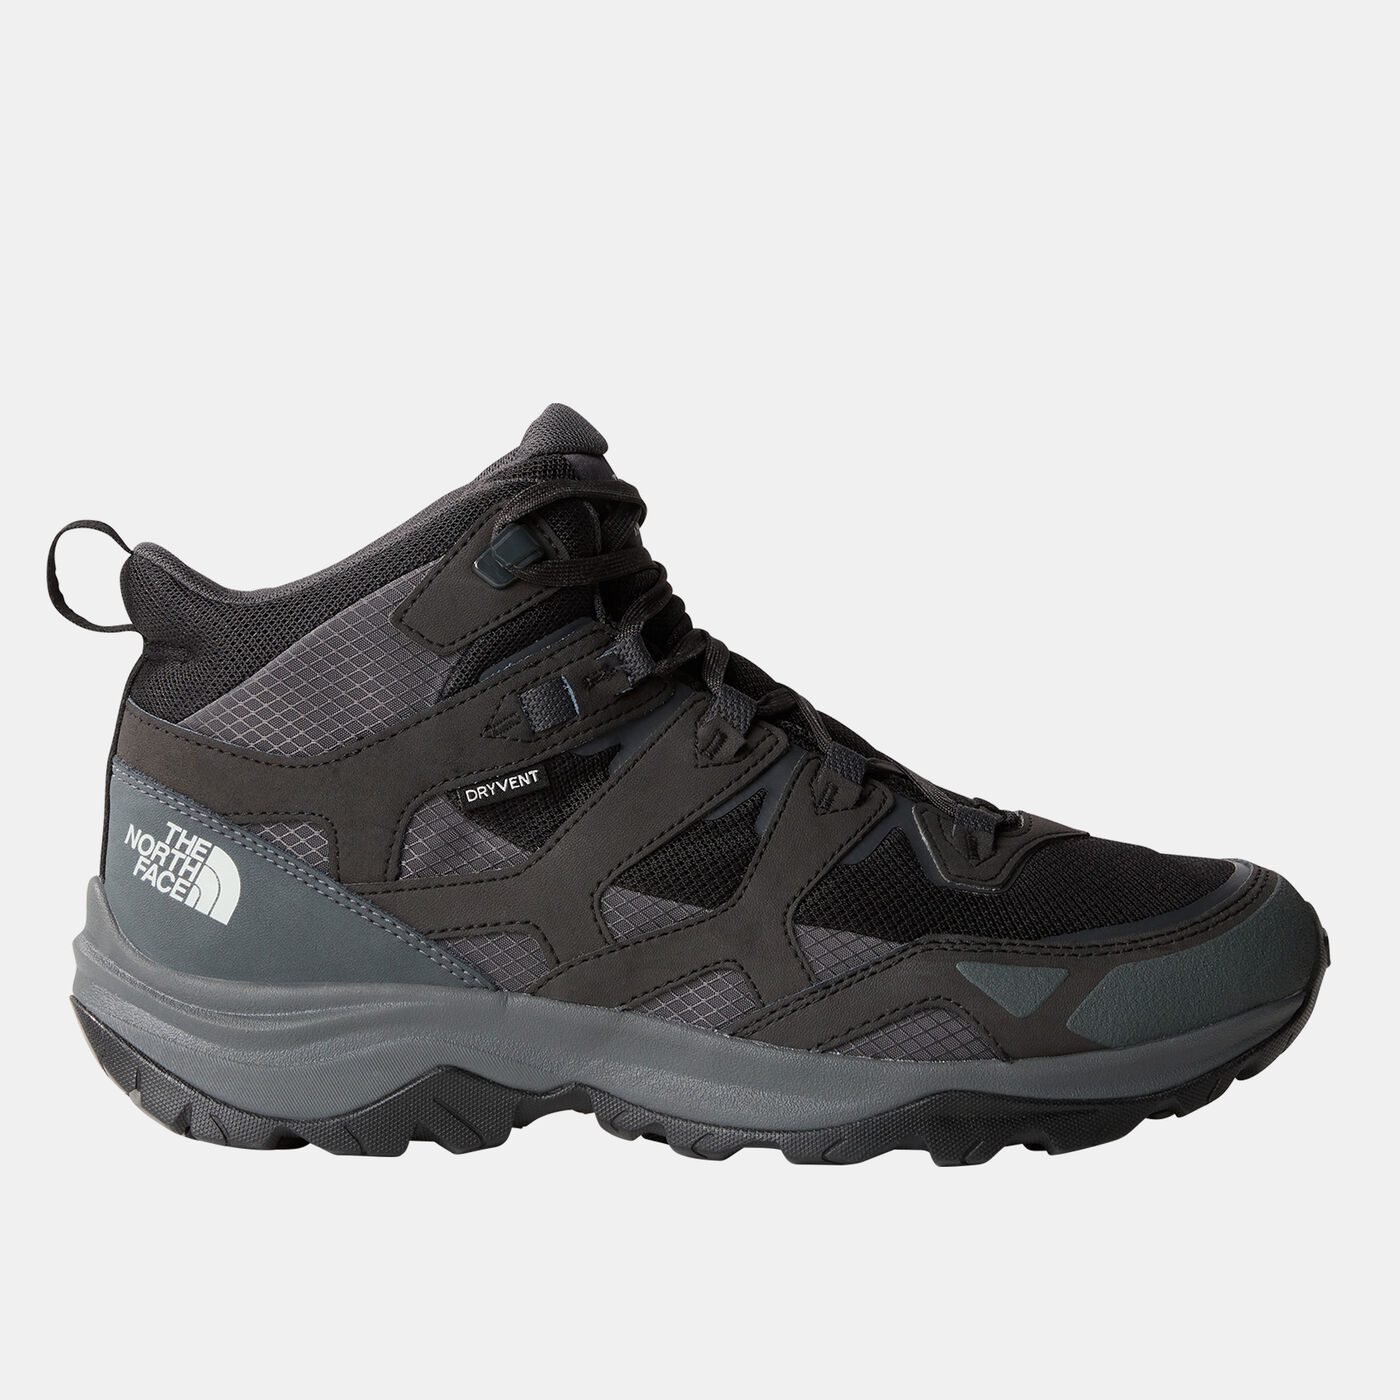 Men's Hedgehog 3 Mid Waterproof Hiking Shoes